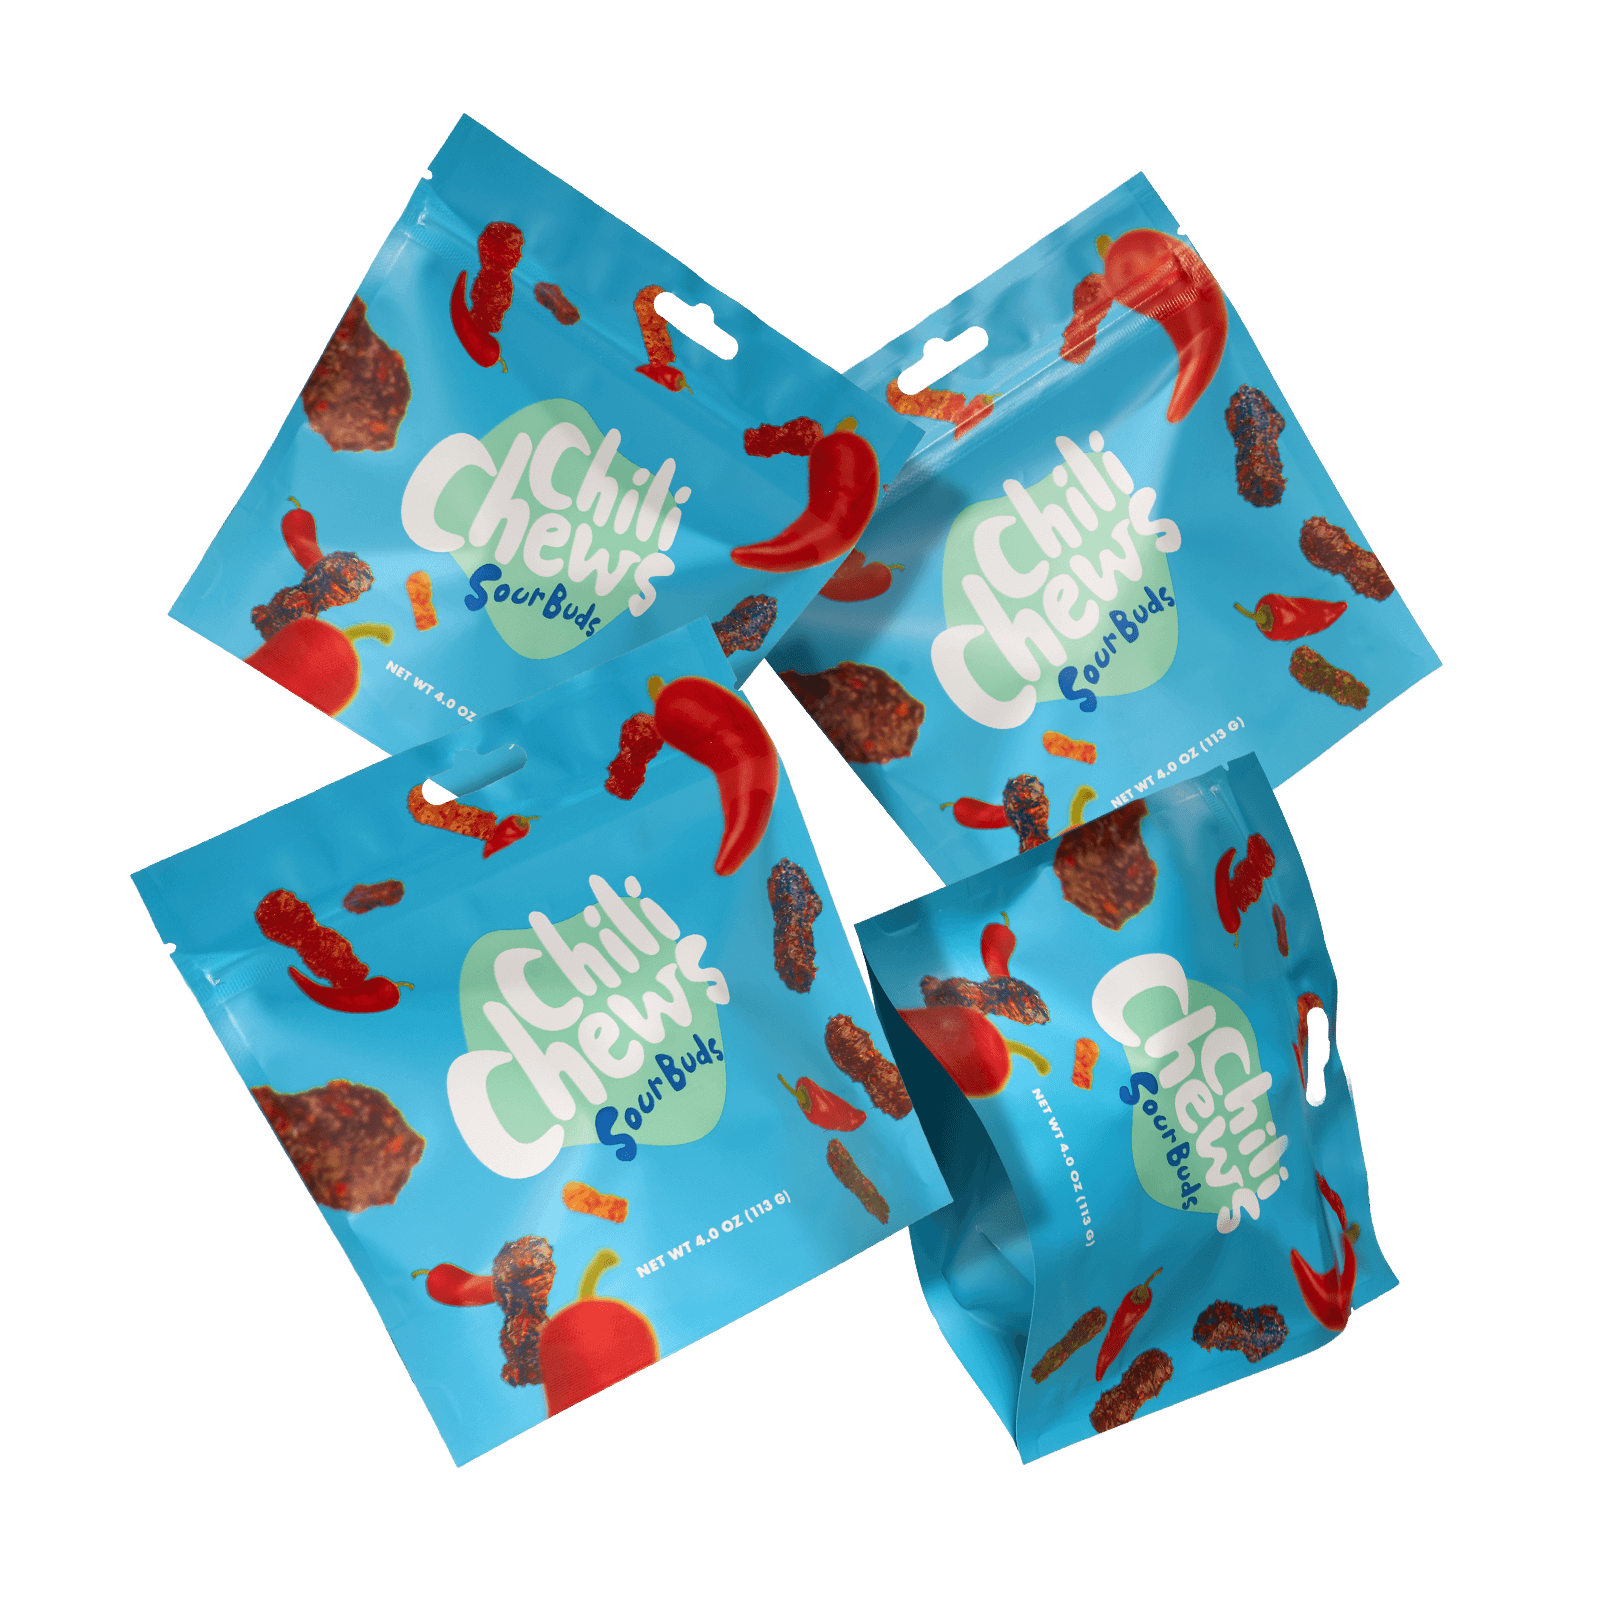 Sour Buds Chili Candy - Chili Chews - Consumerhaus